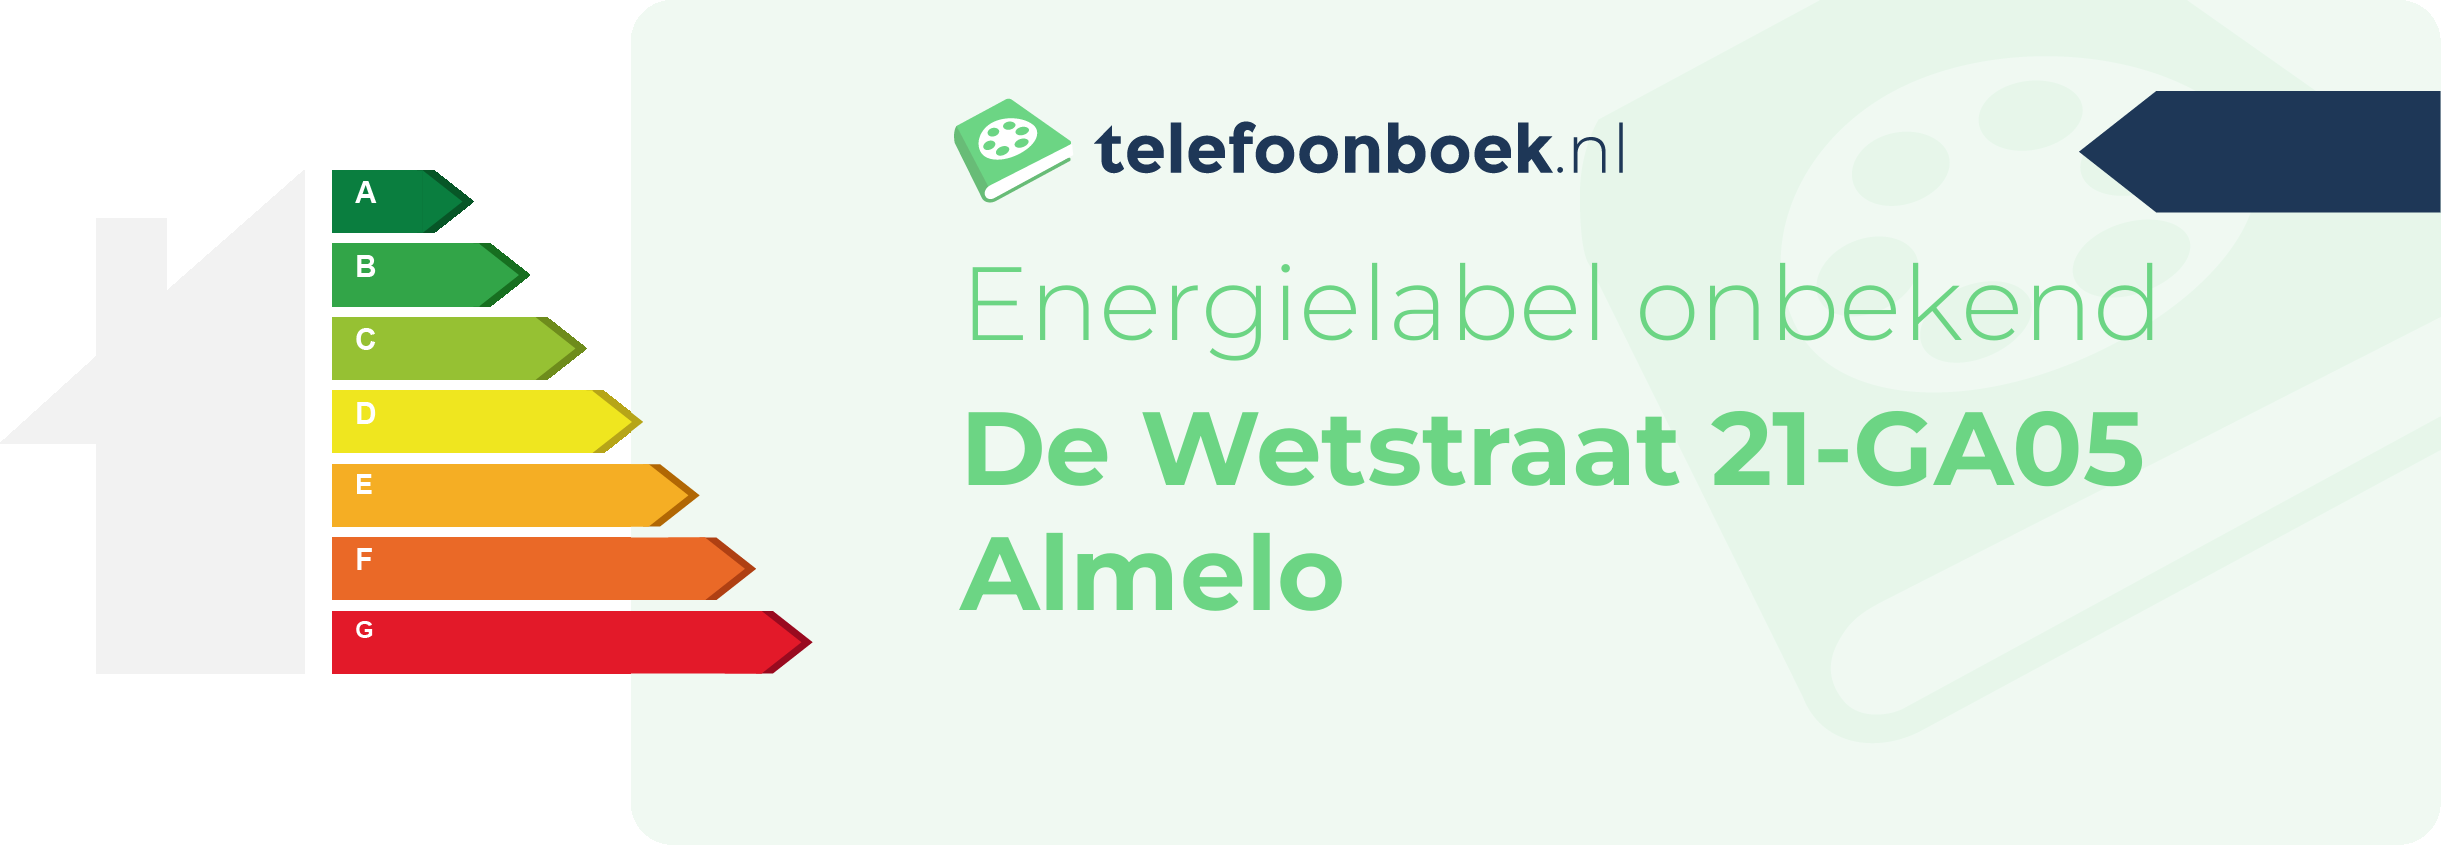 Energielabel De Wetstraat 21-GA05 Almelo